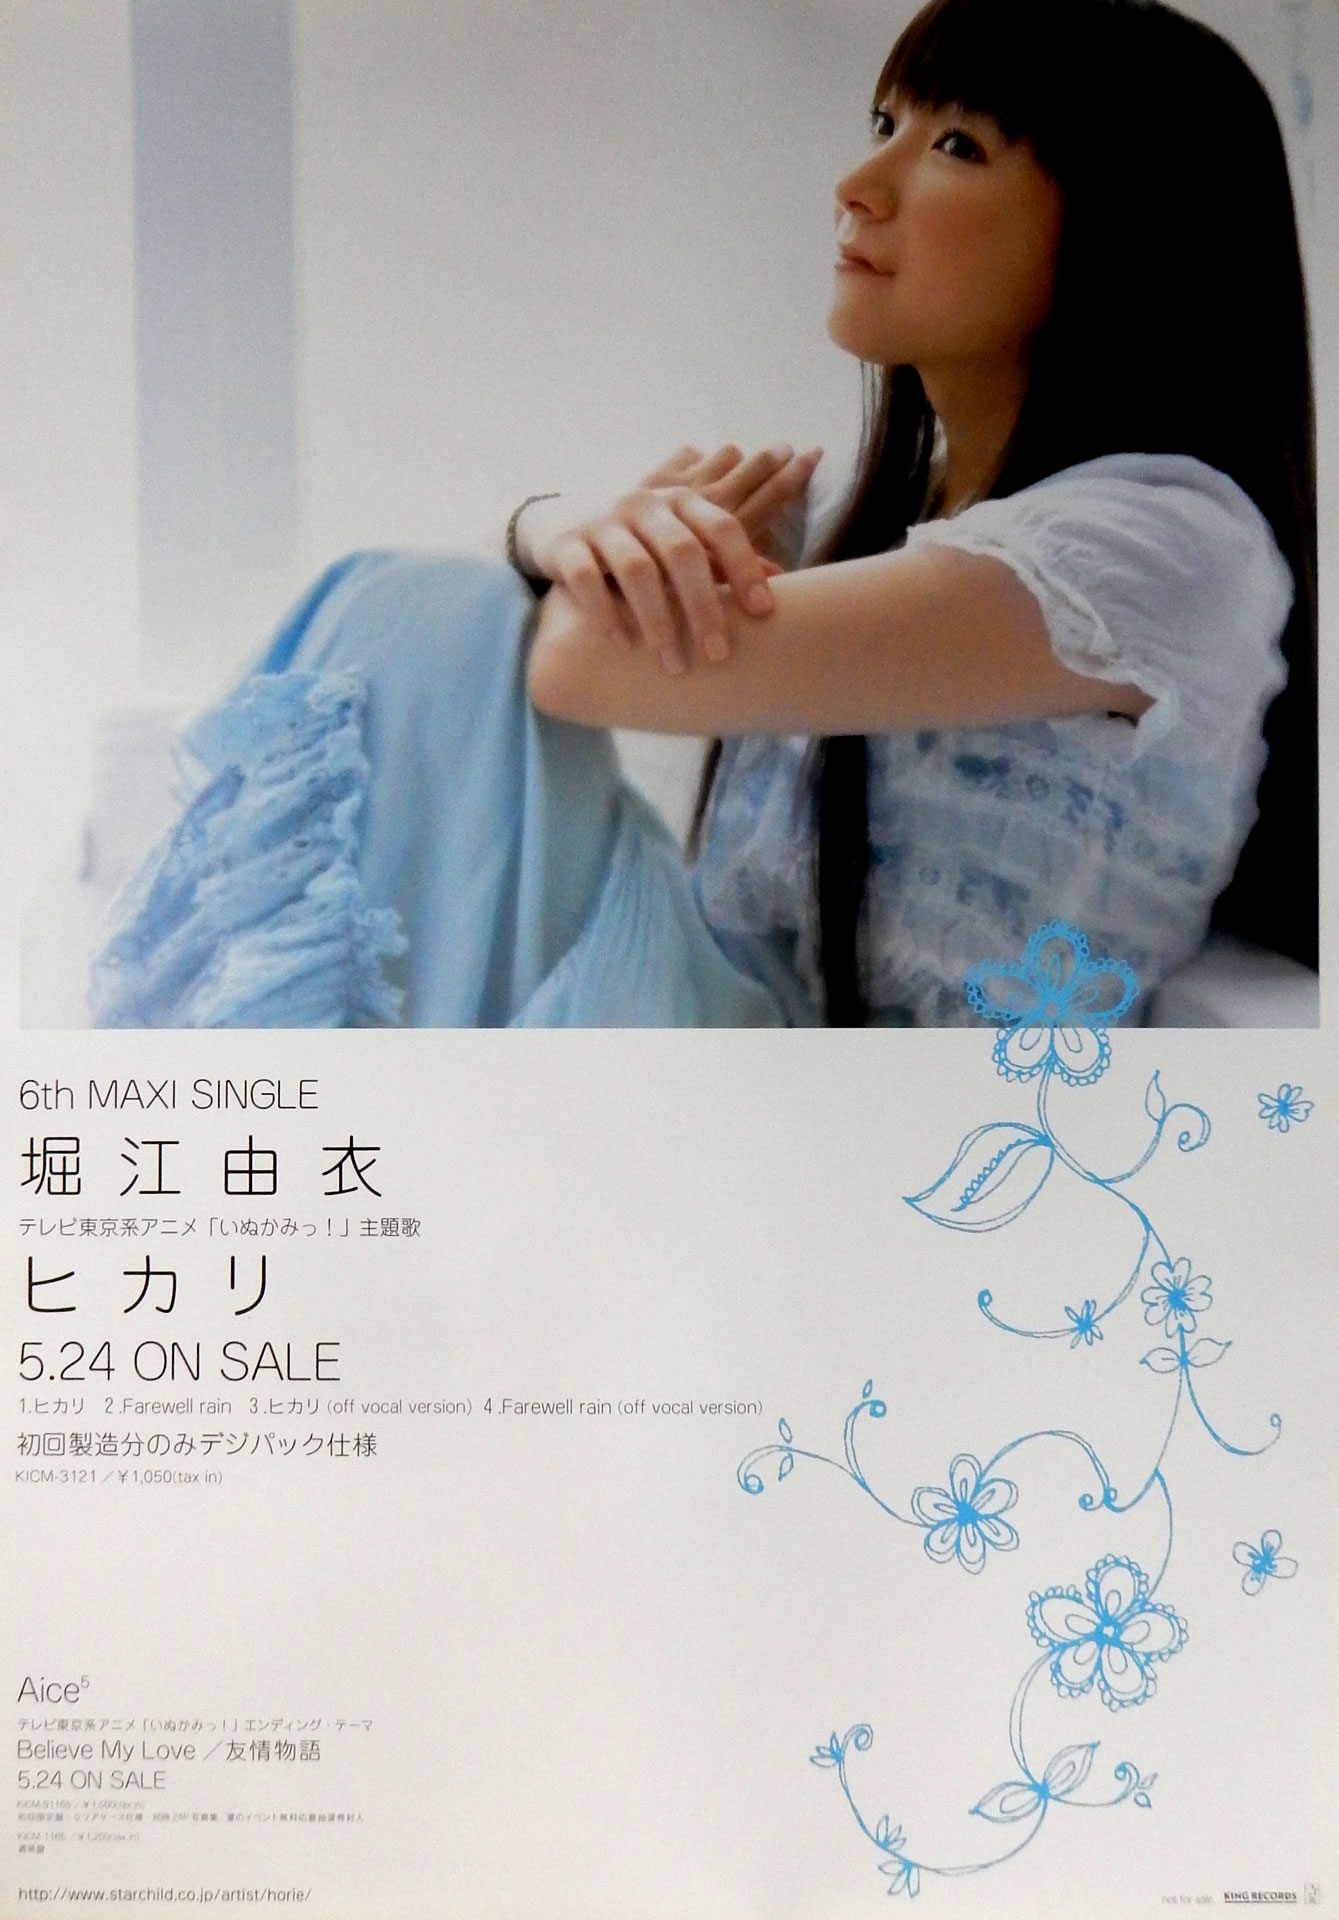 堀江由衣 「ヒカリ」のポスター